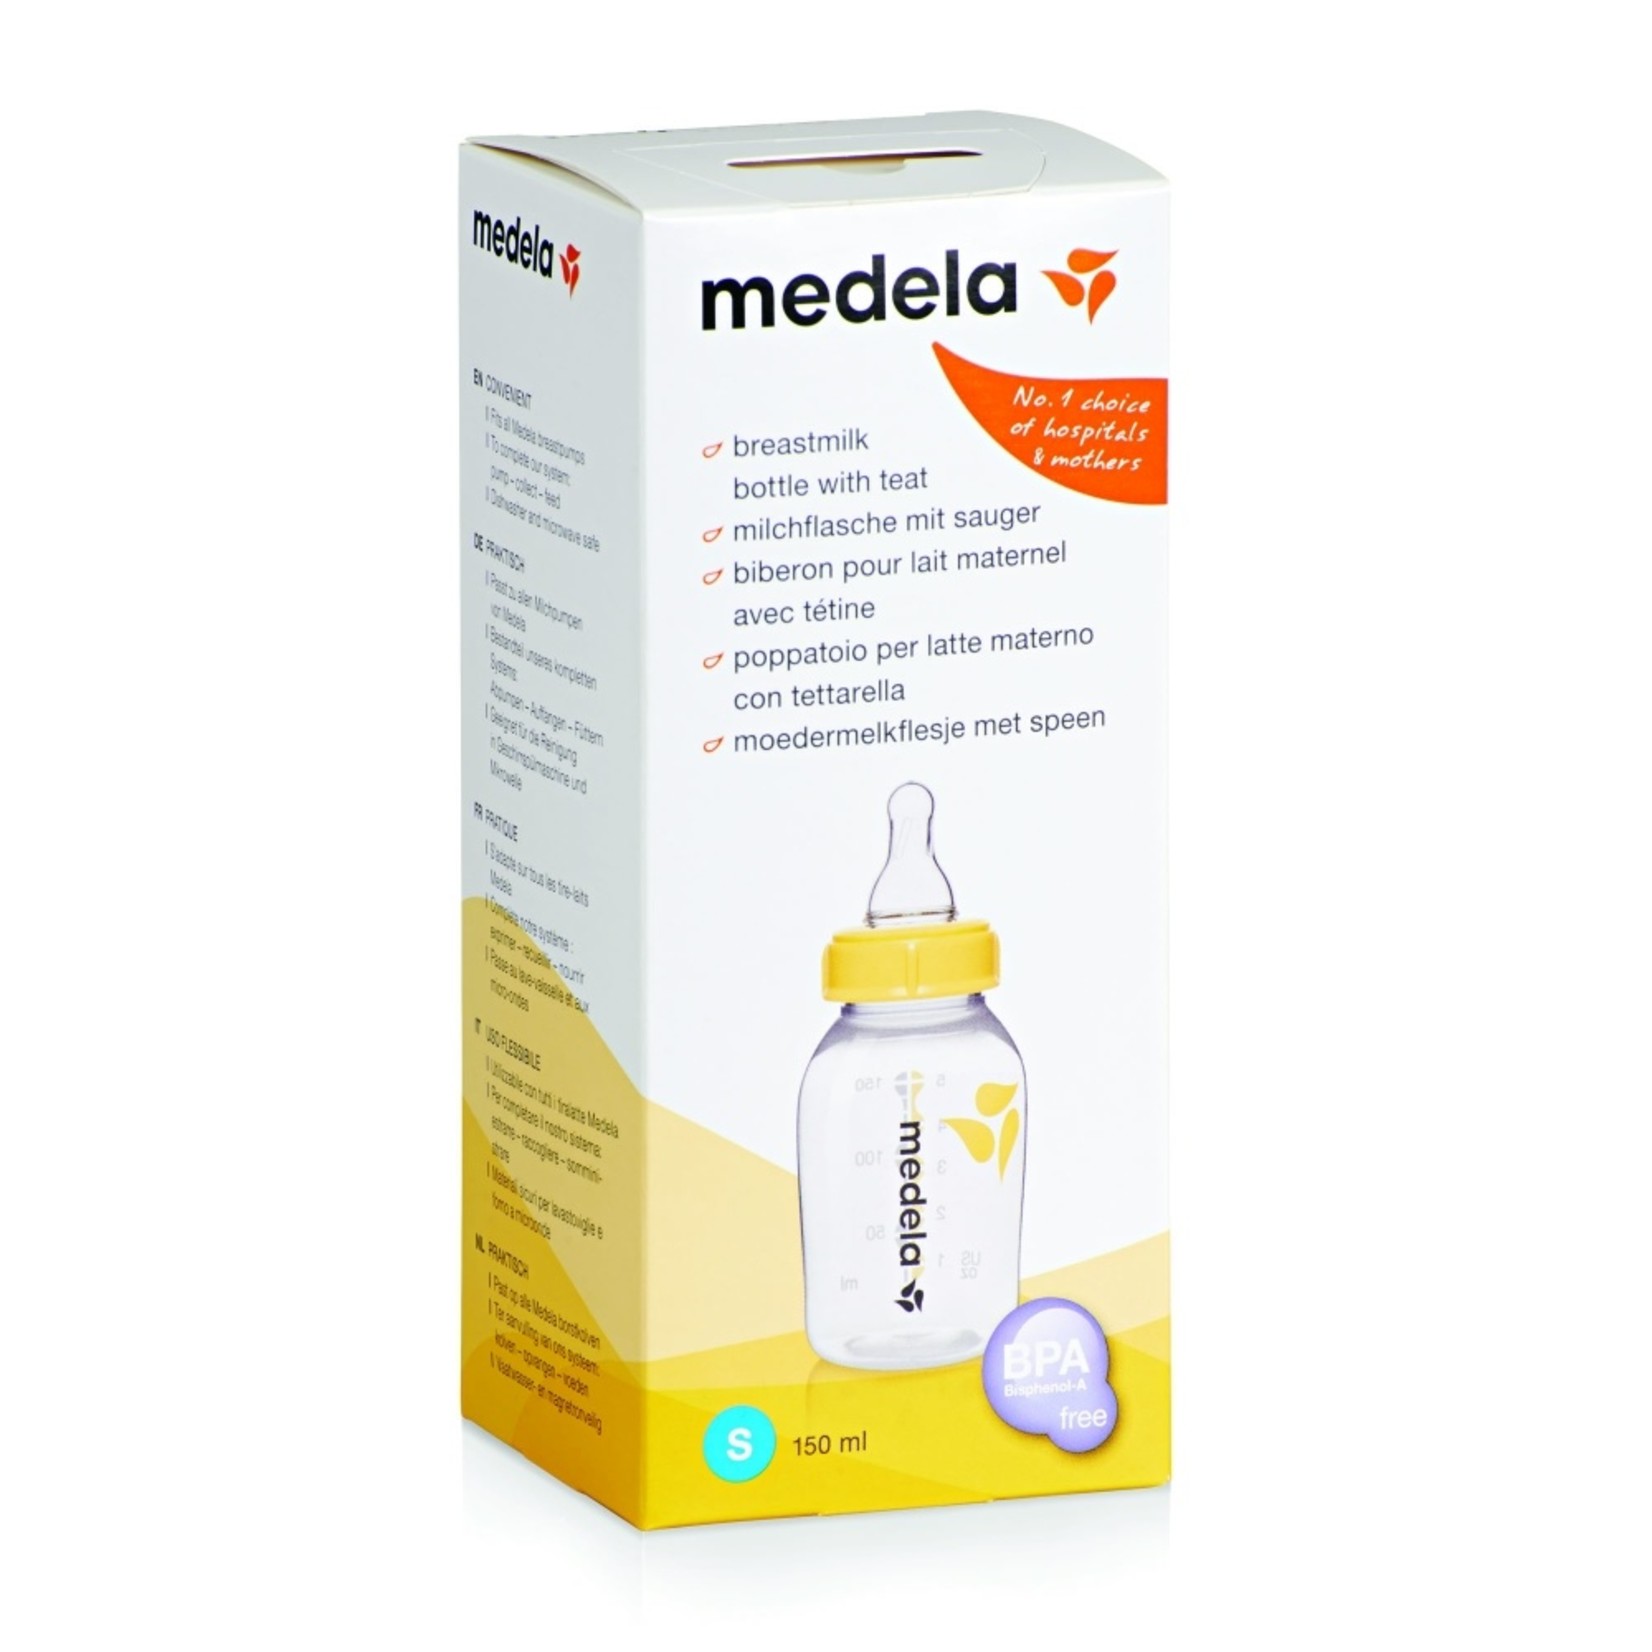 Medela Breastmilk Bottle with teat S (150ml)